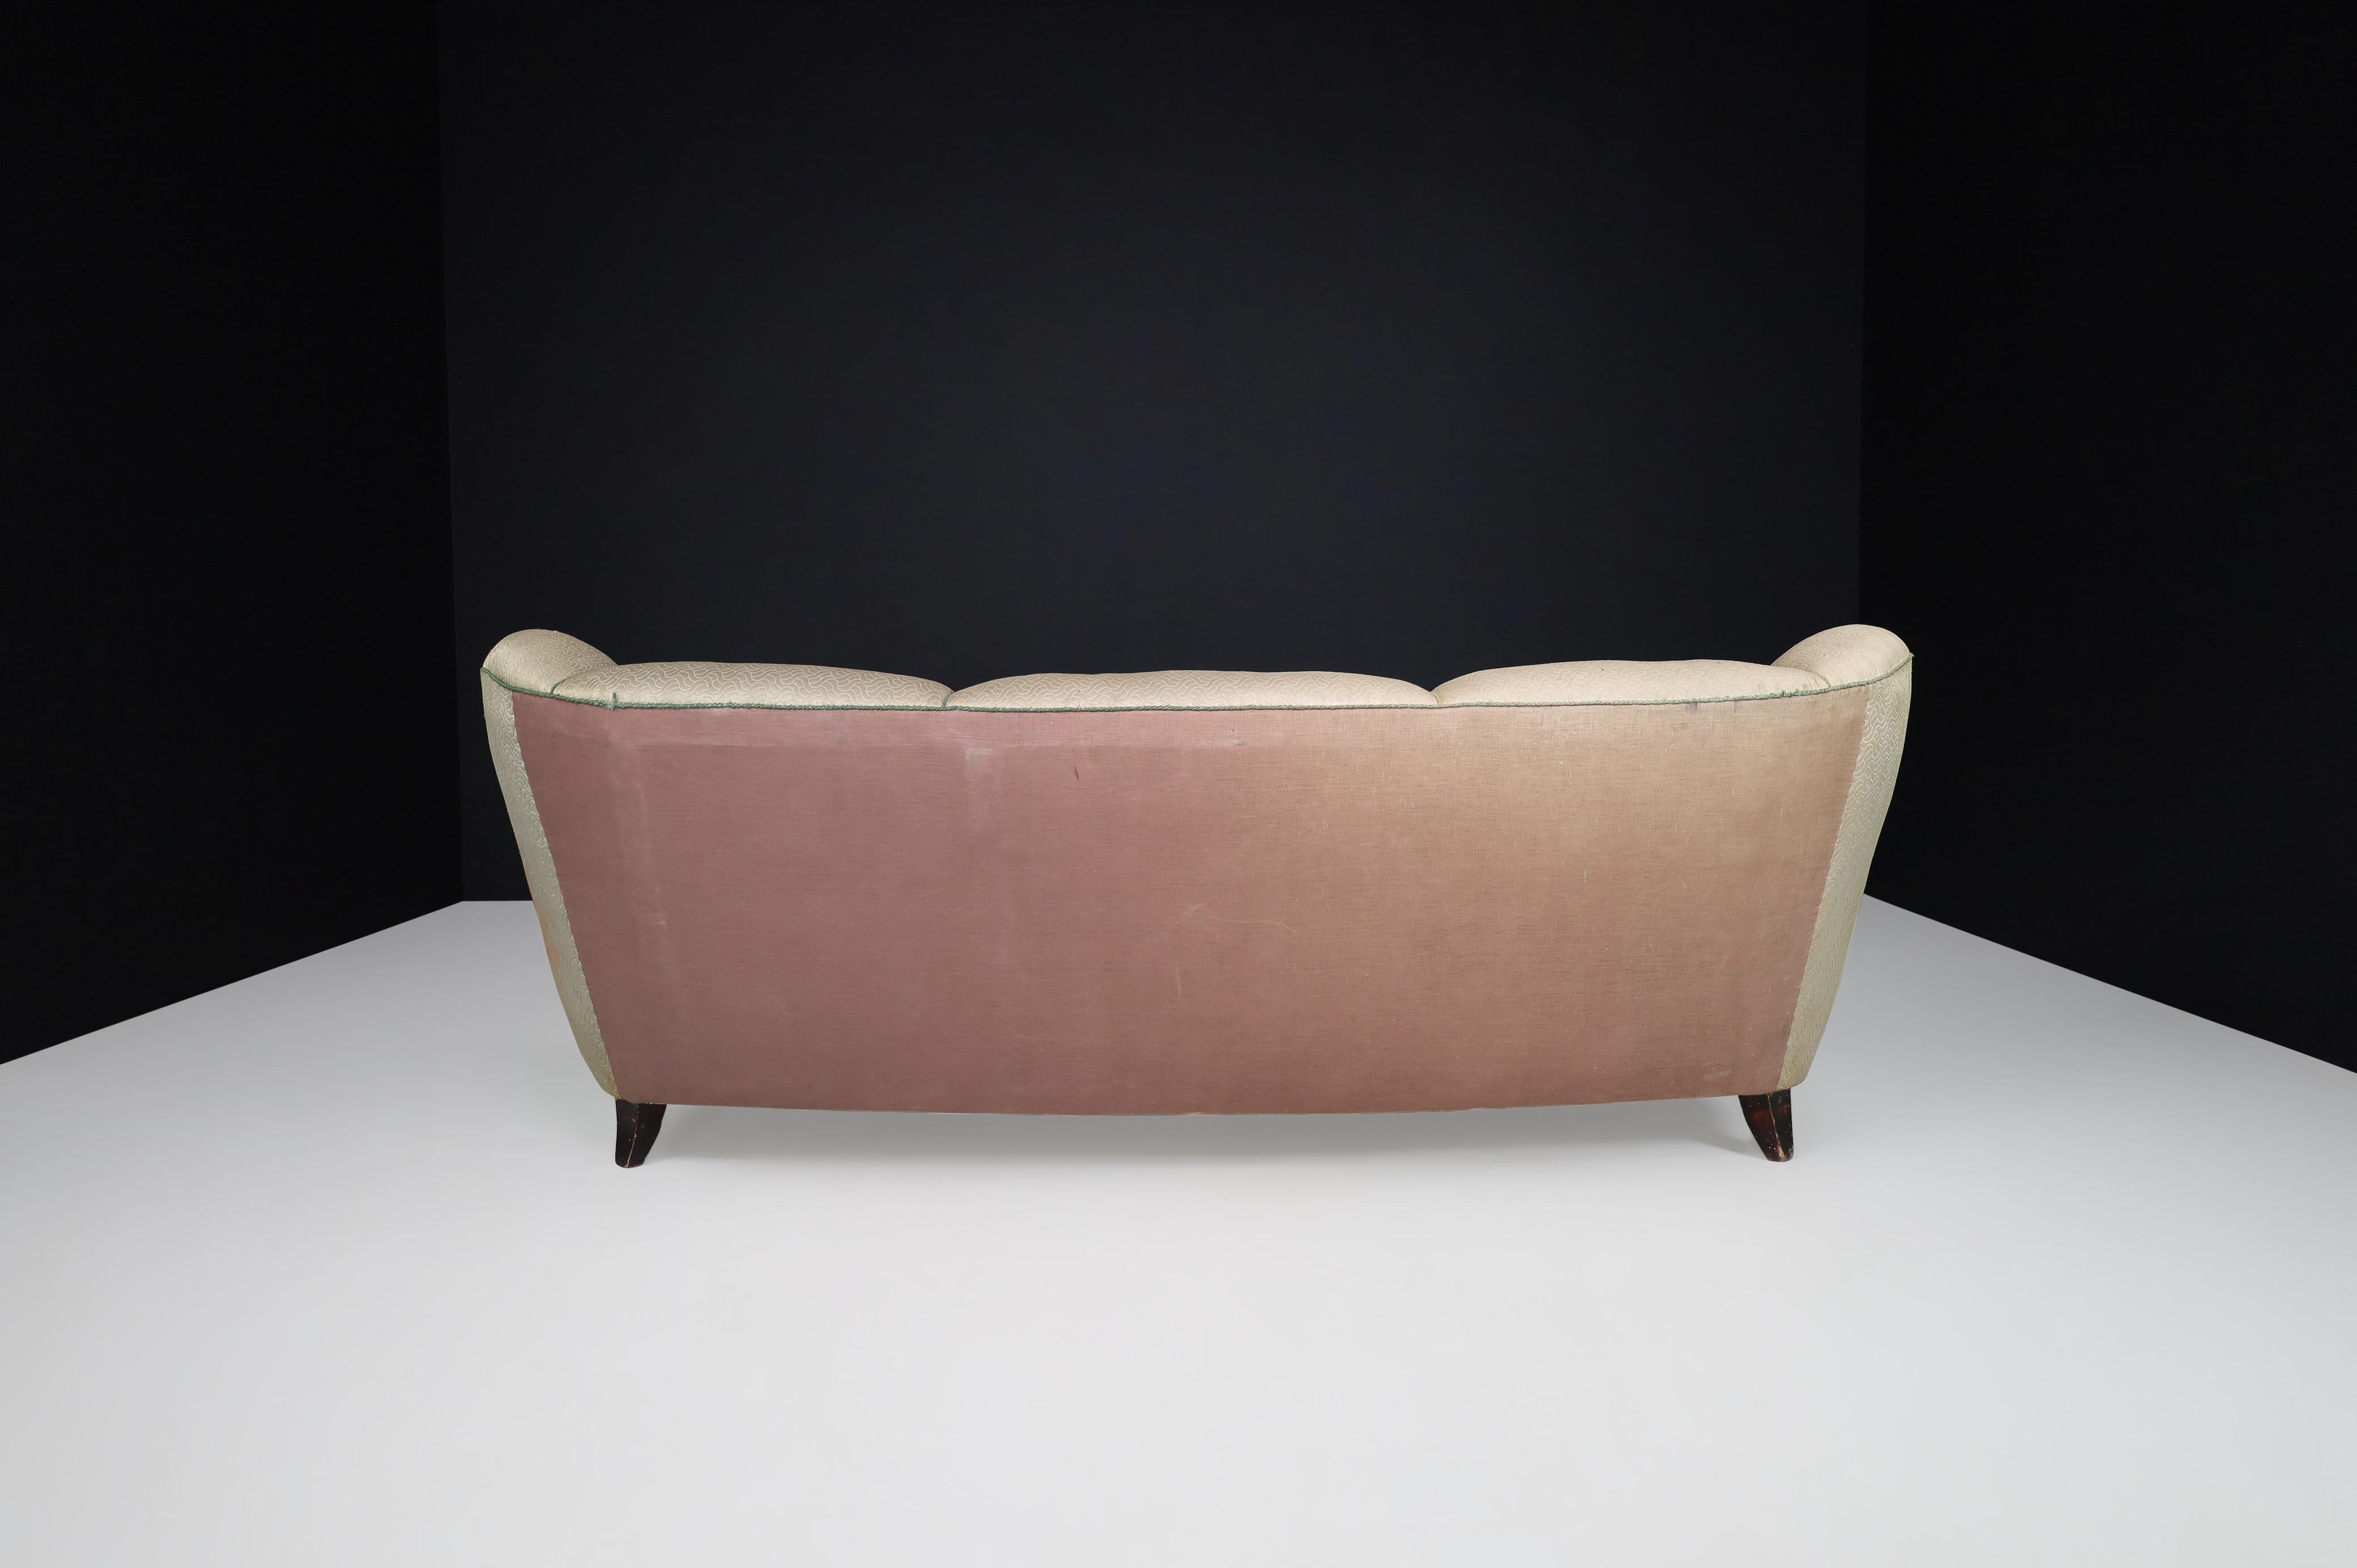 Guglielmo Ulrich Art Deco Sofa in Original Fabric, Italy 1930s For Sale 5